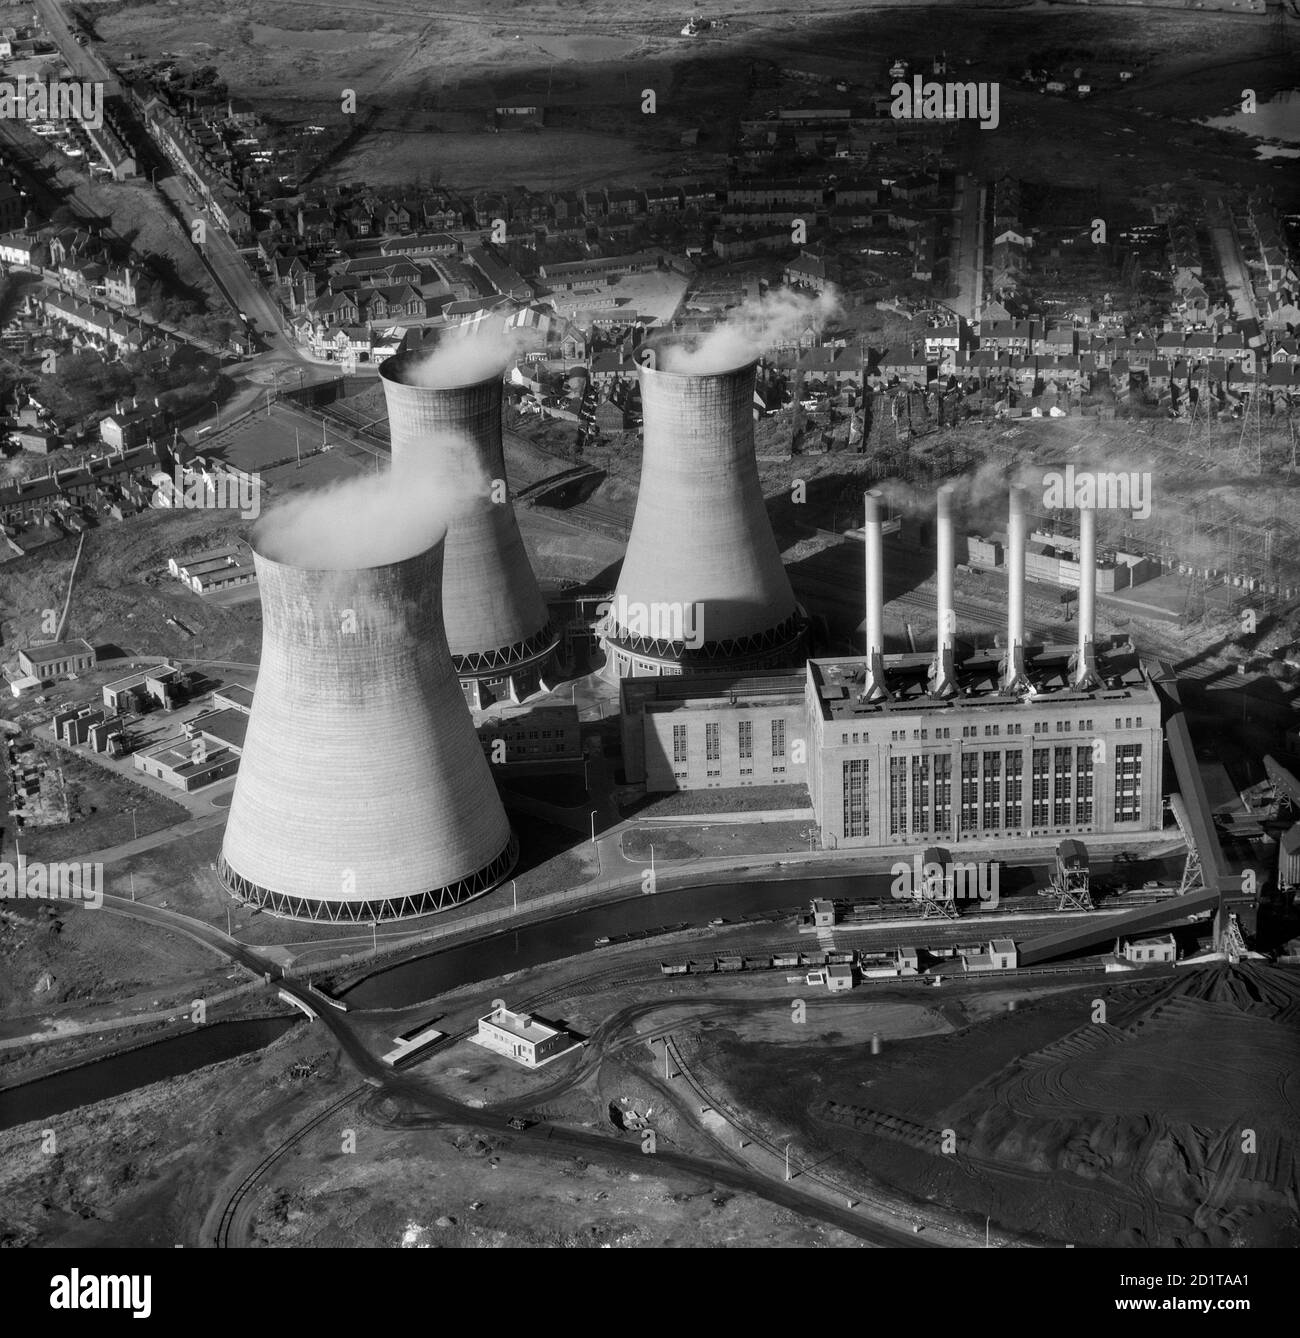 KRAFTWERK OCKER HILL, Tipton, Staffordshire. Luftaufnahme eines Kohlekraftwerks mit drei Kühltürmen, die Dampf abgeben. Es wurde 1902 eröffnet, um das Schwarze Land mit Strom zu versorgen. Es wurde 1977 geschlossen und das Grundstück wird von einer in den 1990er Jahren erbauten Wohnanlage bewohnt. Fotografiert von Aeropictorial 1957. Aerofilms Collection (siehe Links). Stockfoto